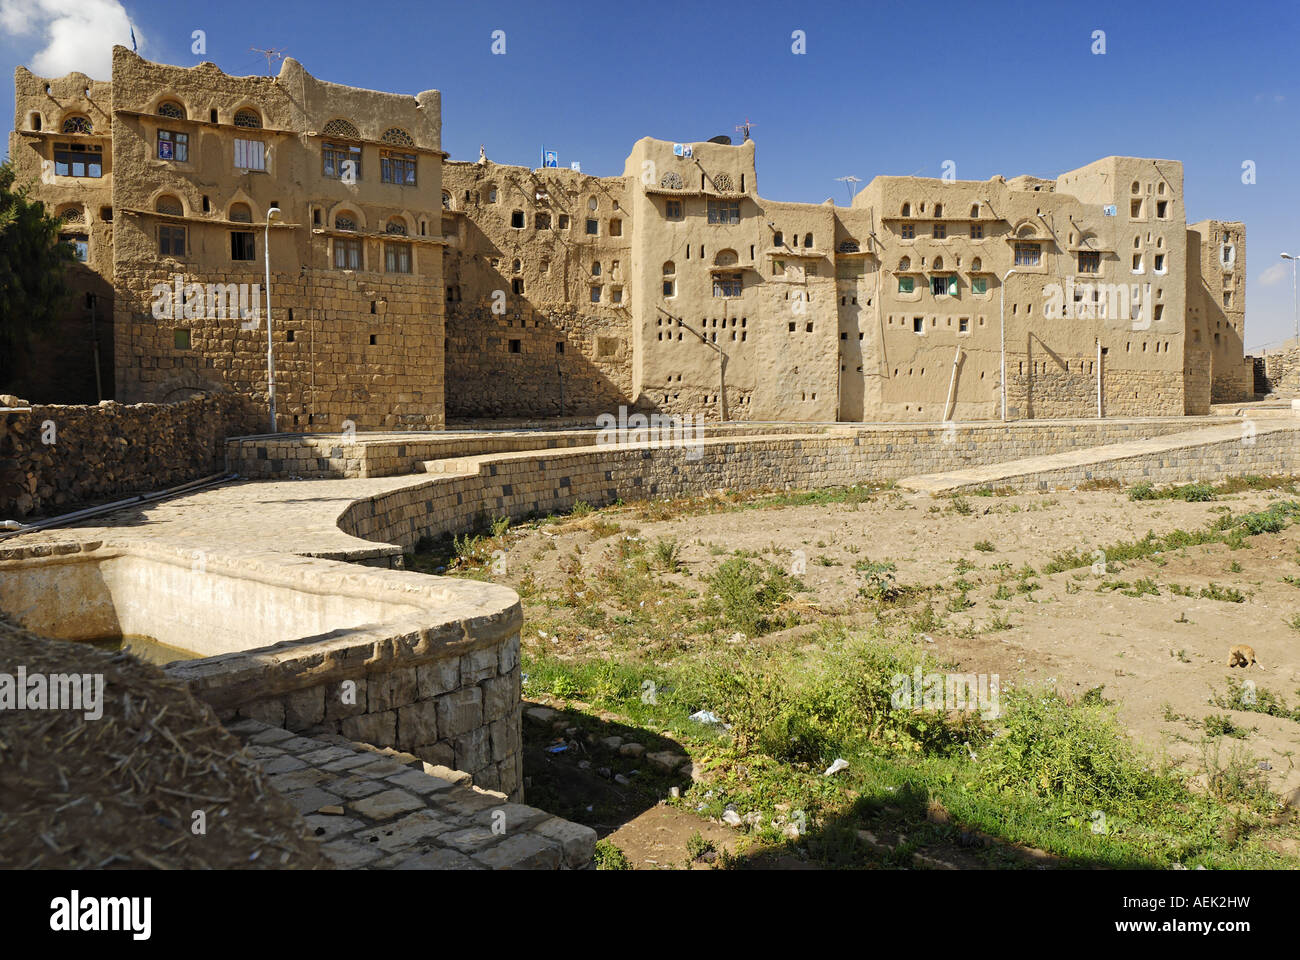 Old town of Amran, Yemen Stock Photo